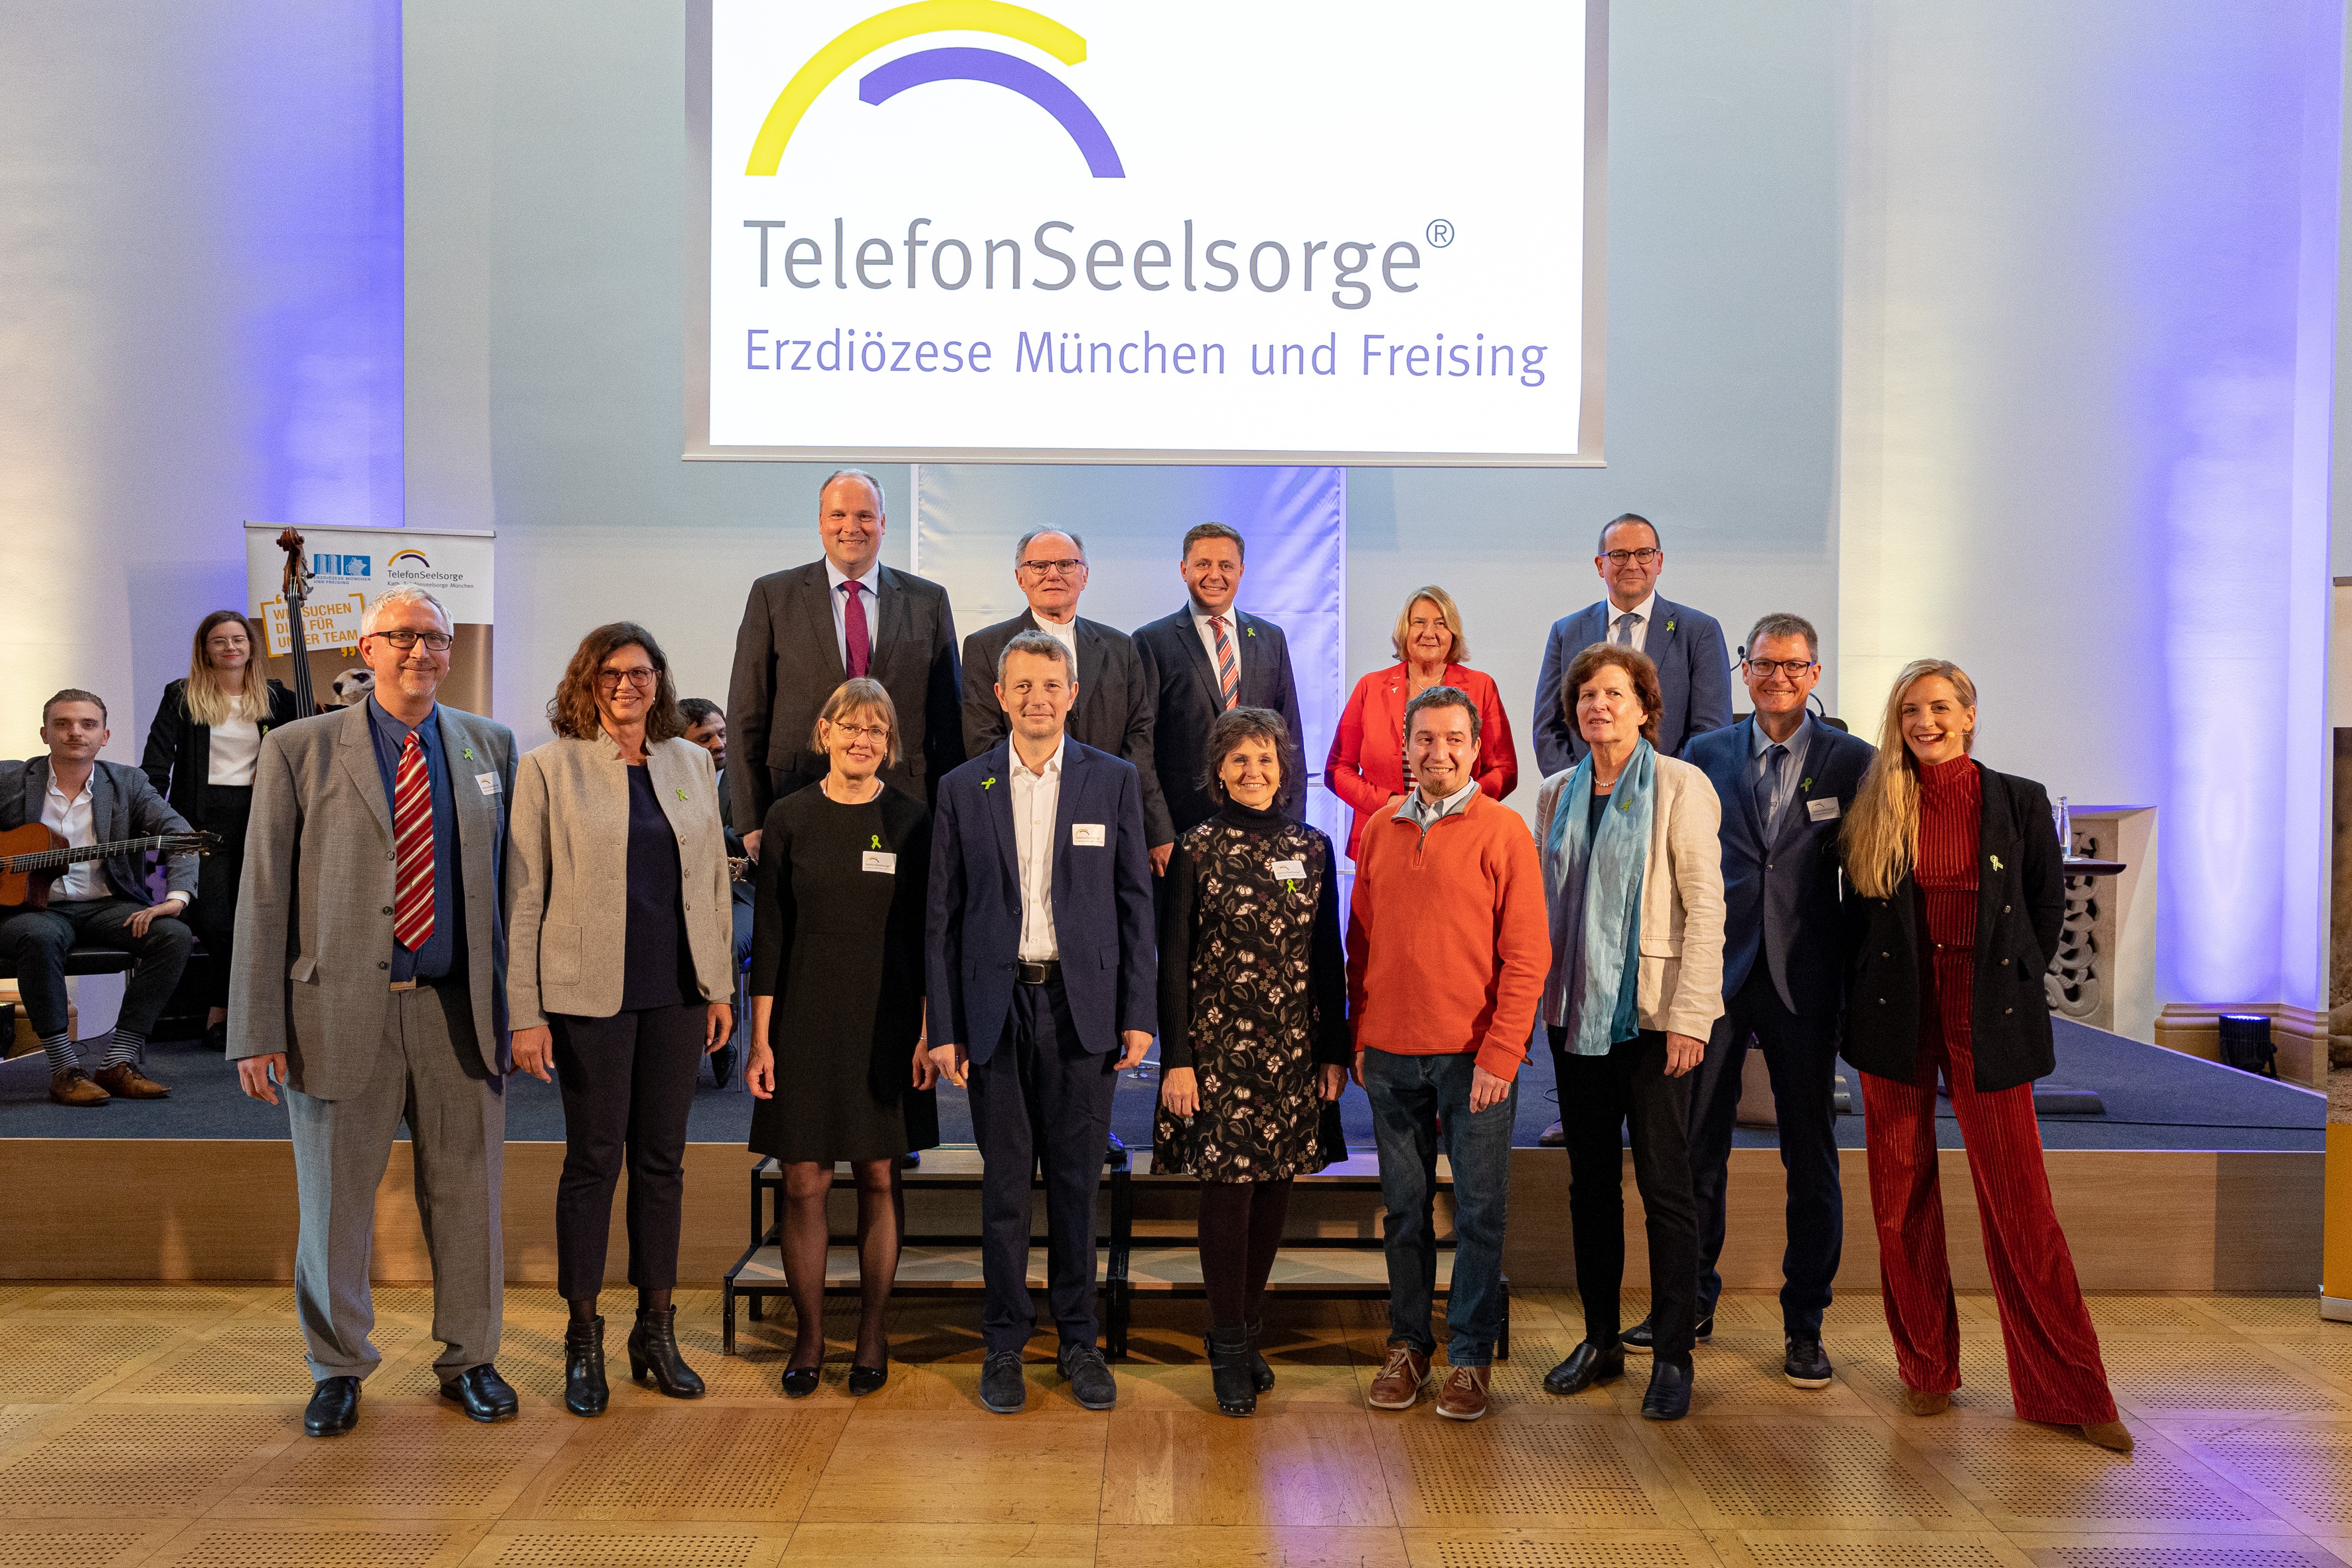 Ehrengäste und Teilnehmende an den Podien beim Jubiläum 60 Jahre TelefonSeelsorge, 07.10.2022